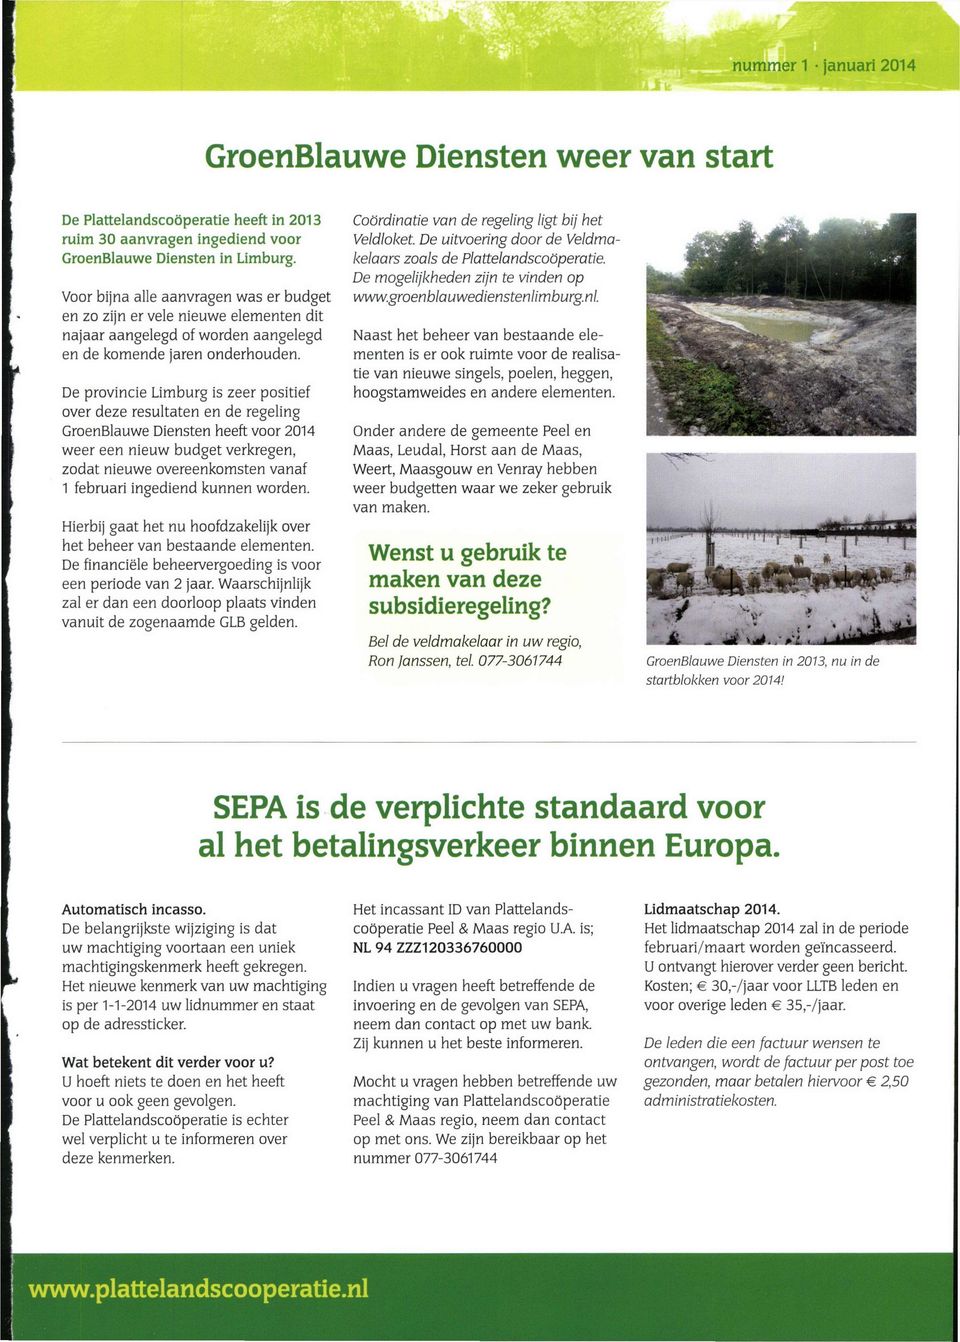 De provincie Limburg is zeer positief over deze resultaten en de regeling GroenBlauwe Diensten heeft voor 2014 weer een nieuw budget verkregen, zodat nieuwe overeenkomsten vanaf 1 februari ingediend